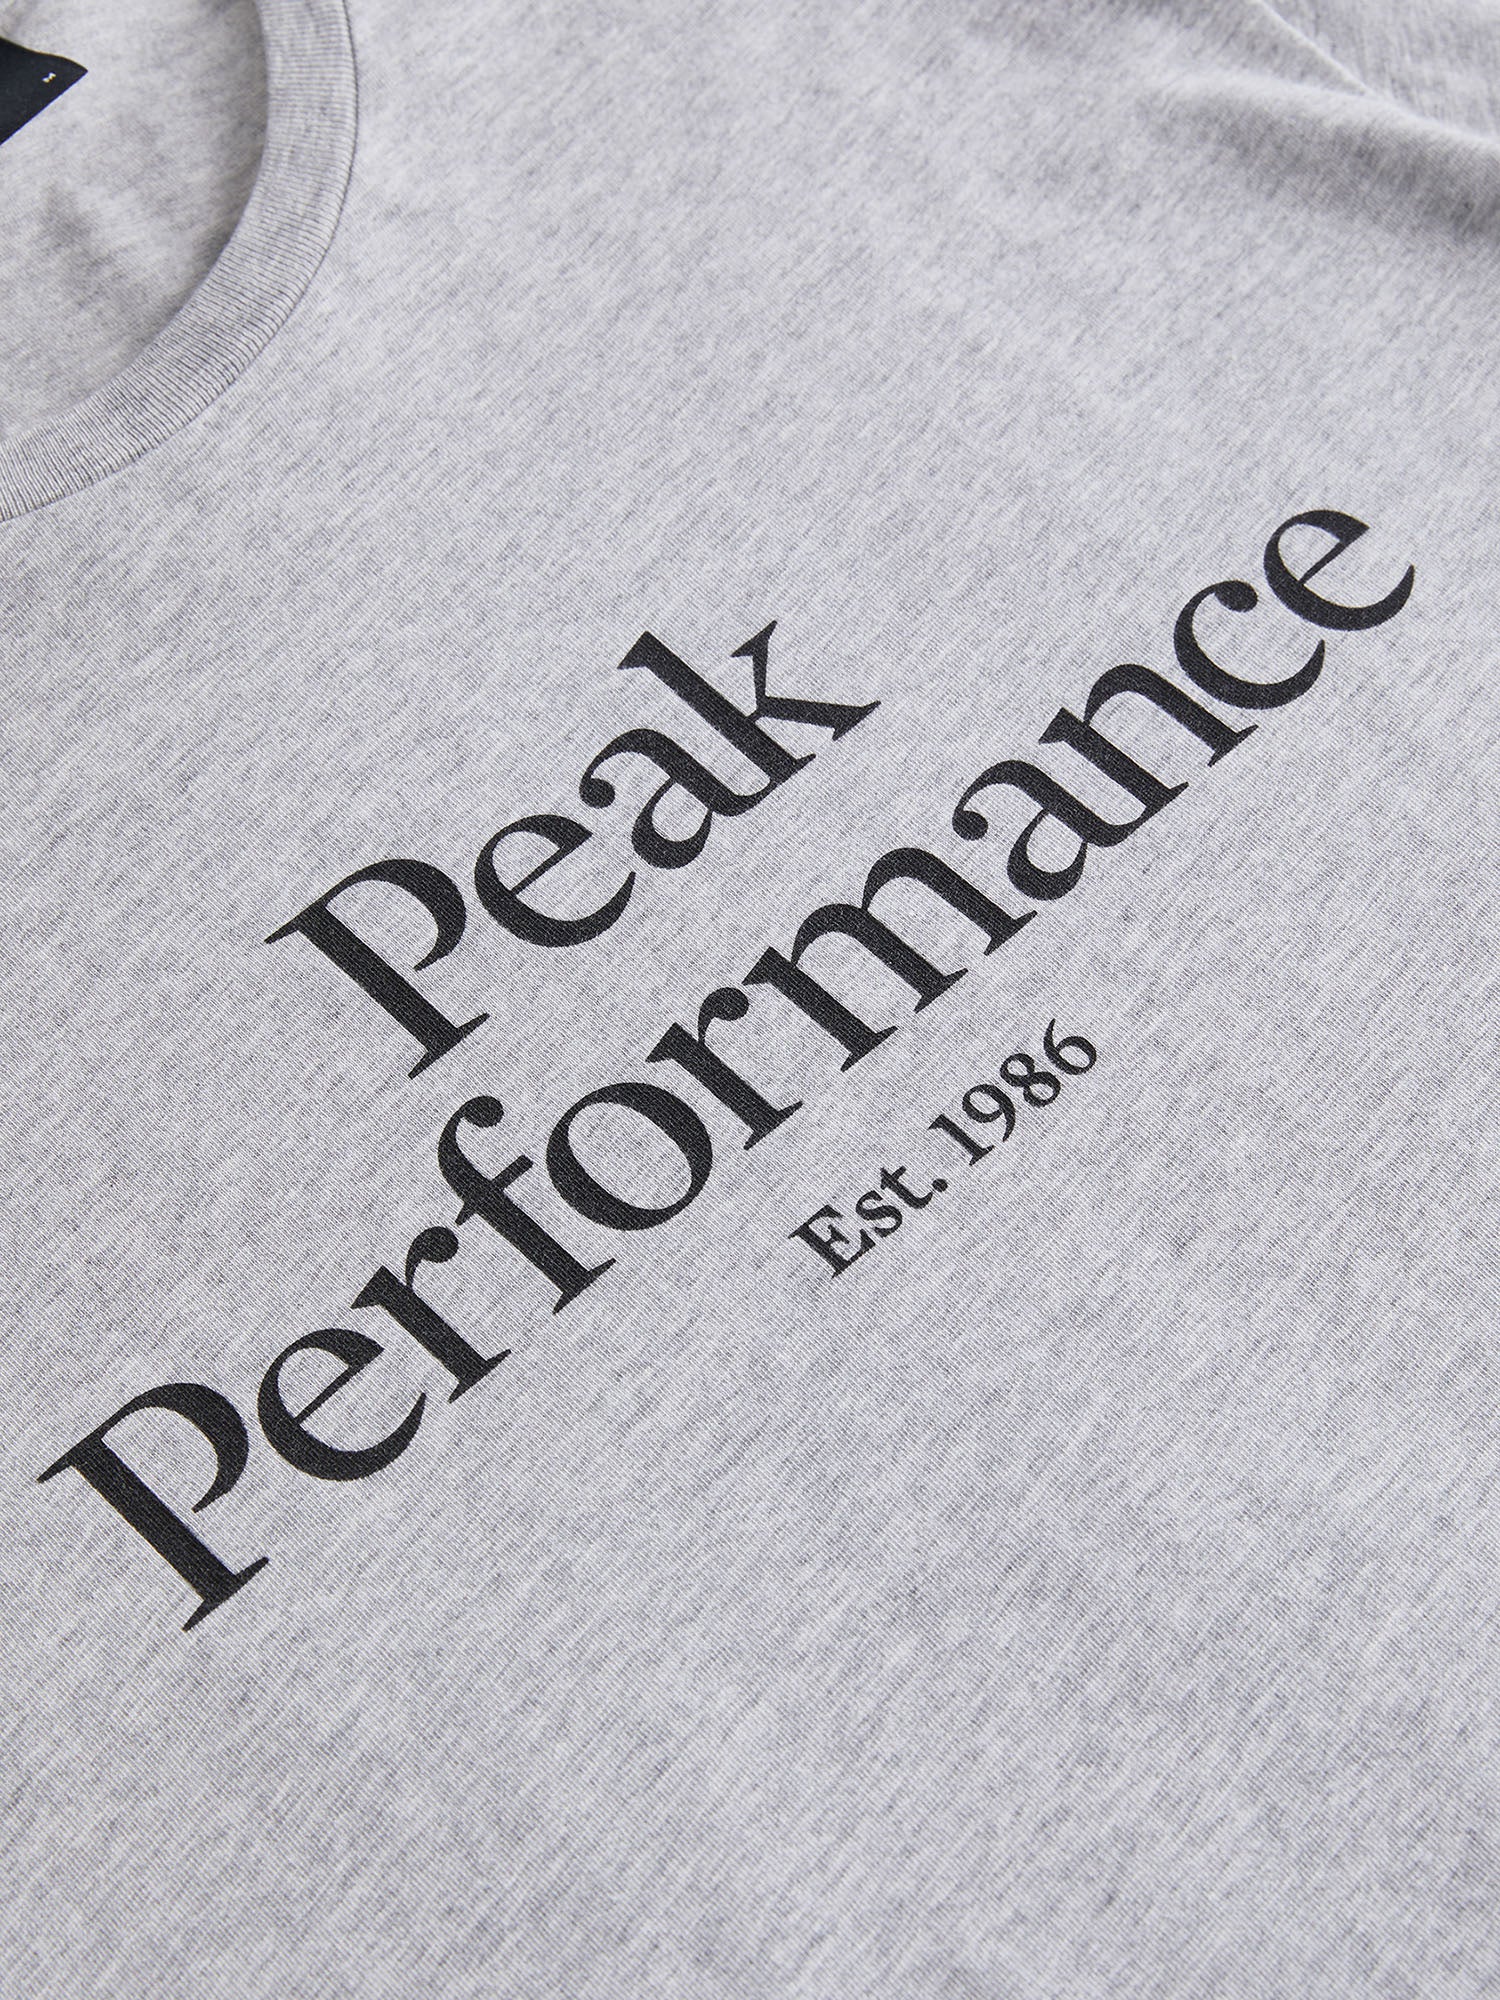 Peak Performance | オリジナル ティー メンズ